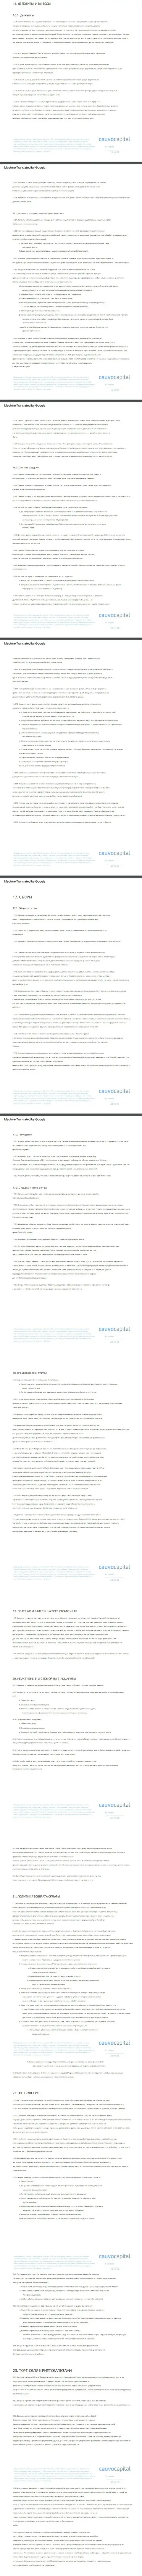 3 часть пользовательского соглашения форекс-дилингового центра CauvoCapital